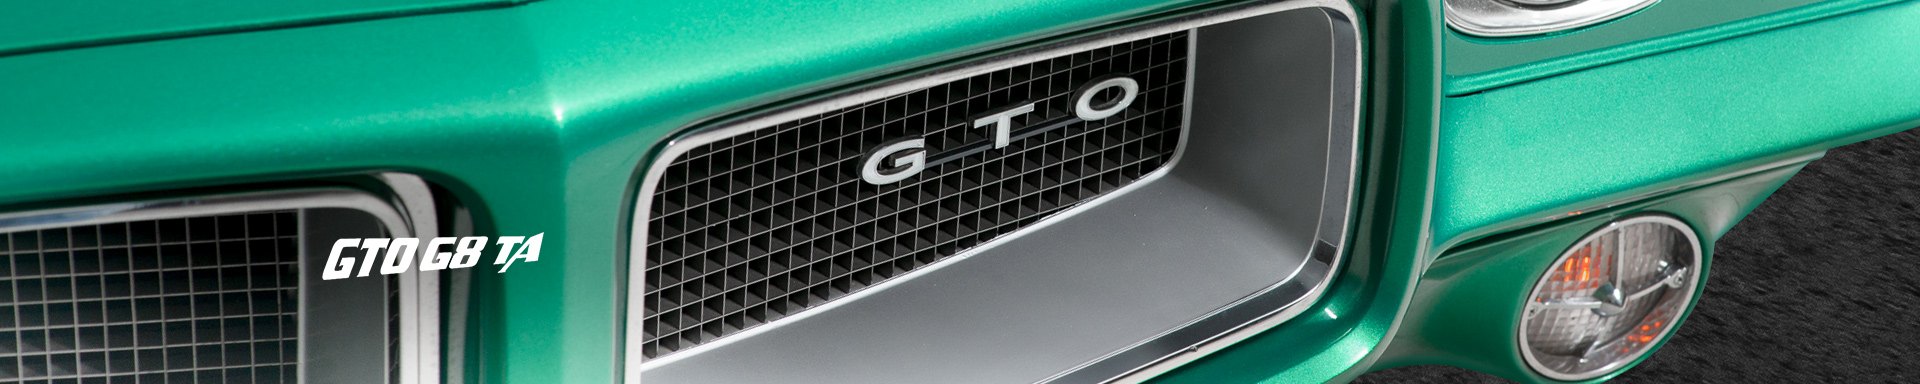 GTOG8TA Driveline & Axles